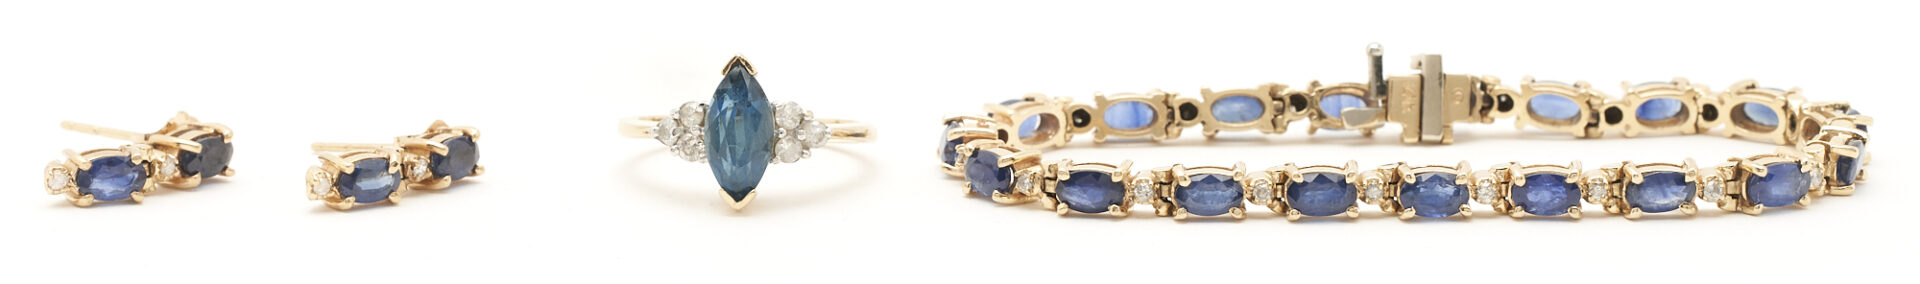 Lot 74: 14K Gemstone & Diamond Ring, Bracelet, and Earrings